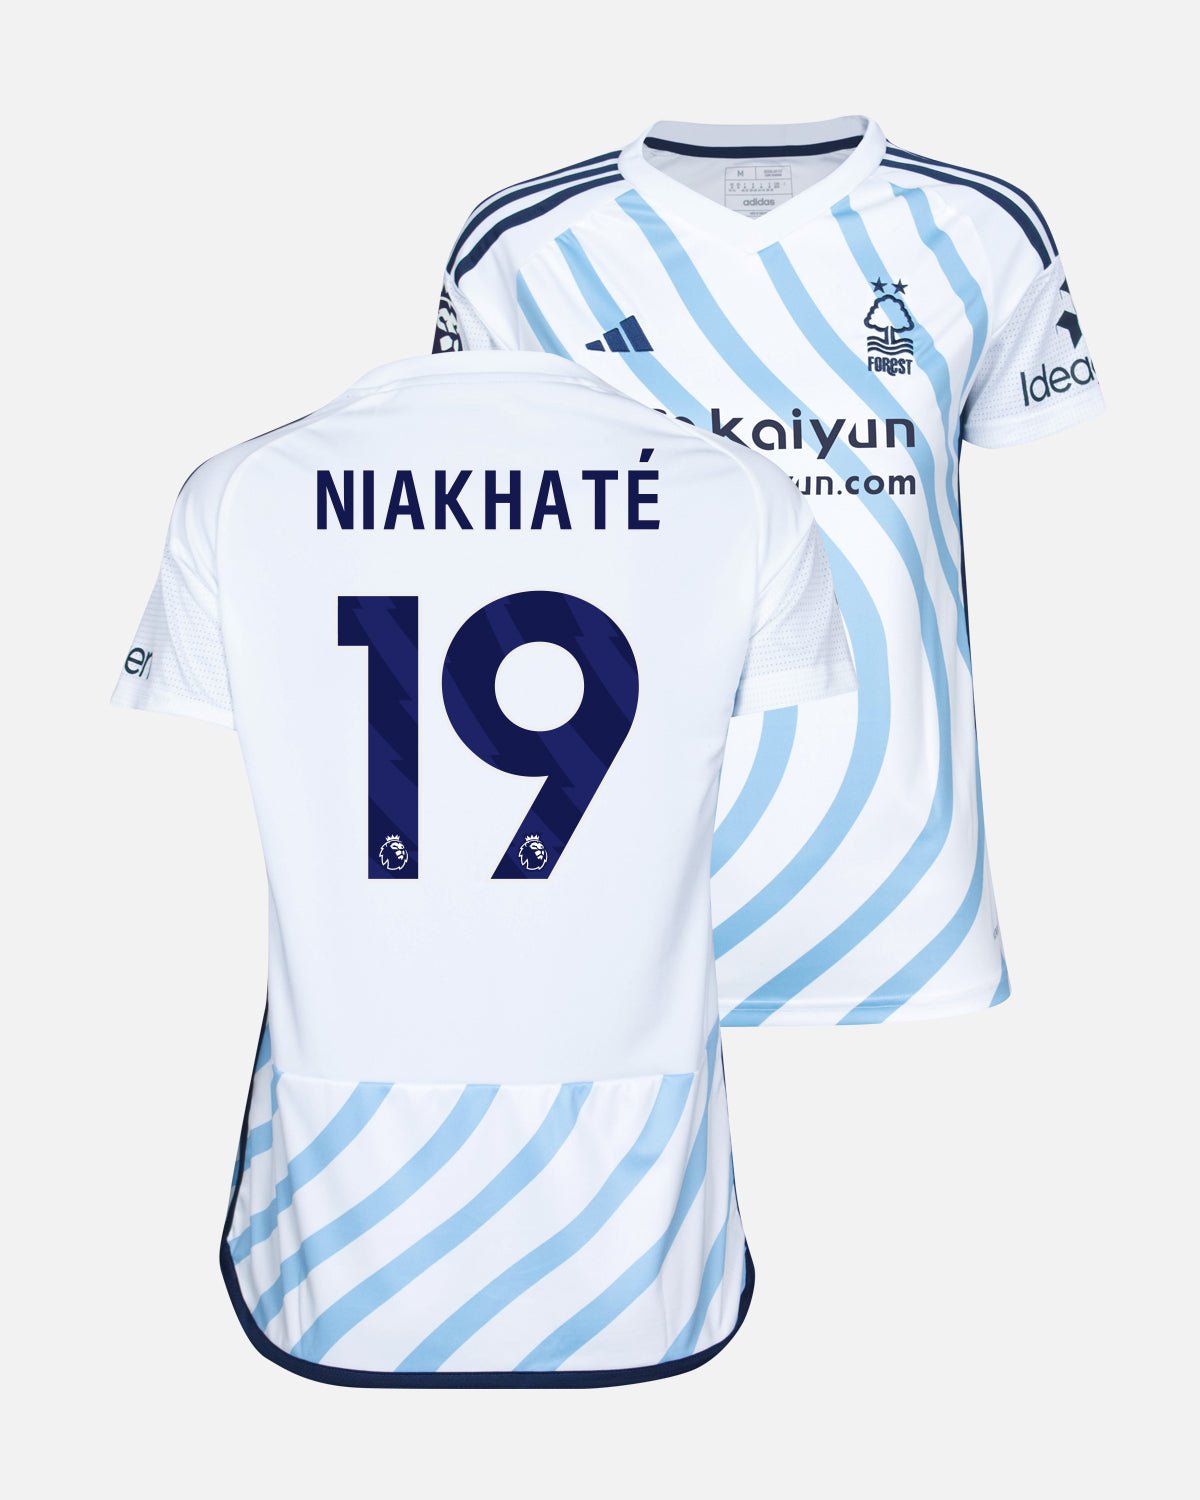 NFFC Women's Away Shirt 23-24 - Niakhaté 19 - Nottingham Forest FC